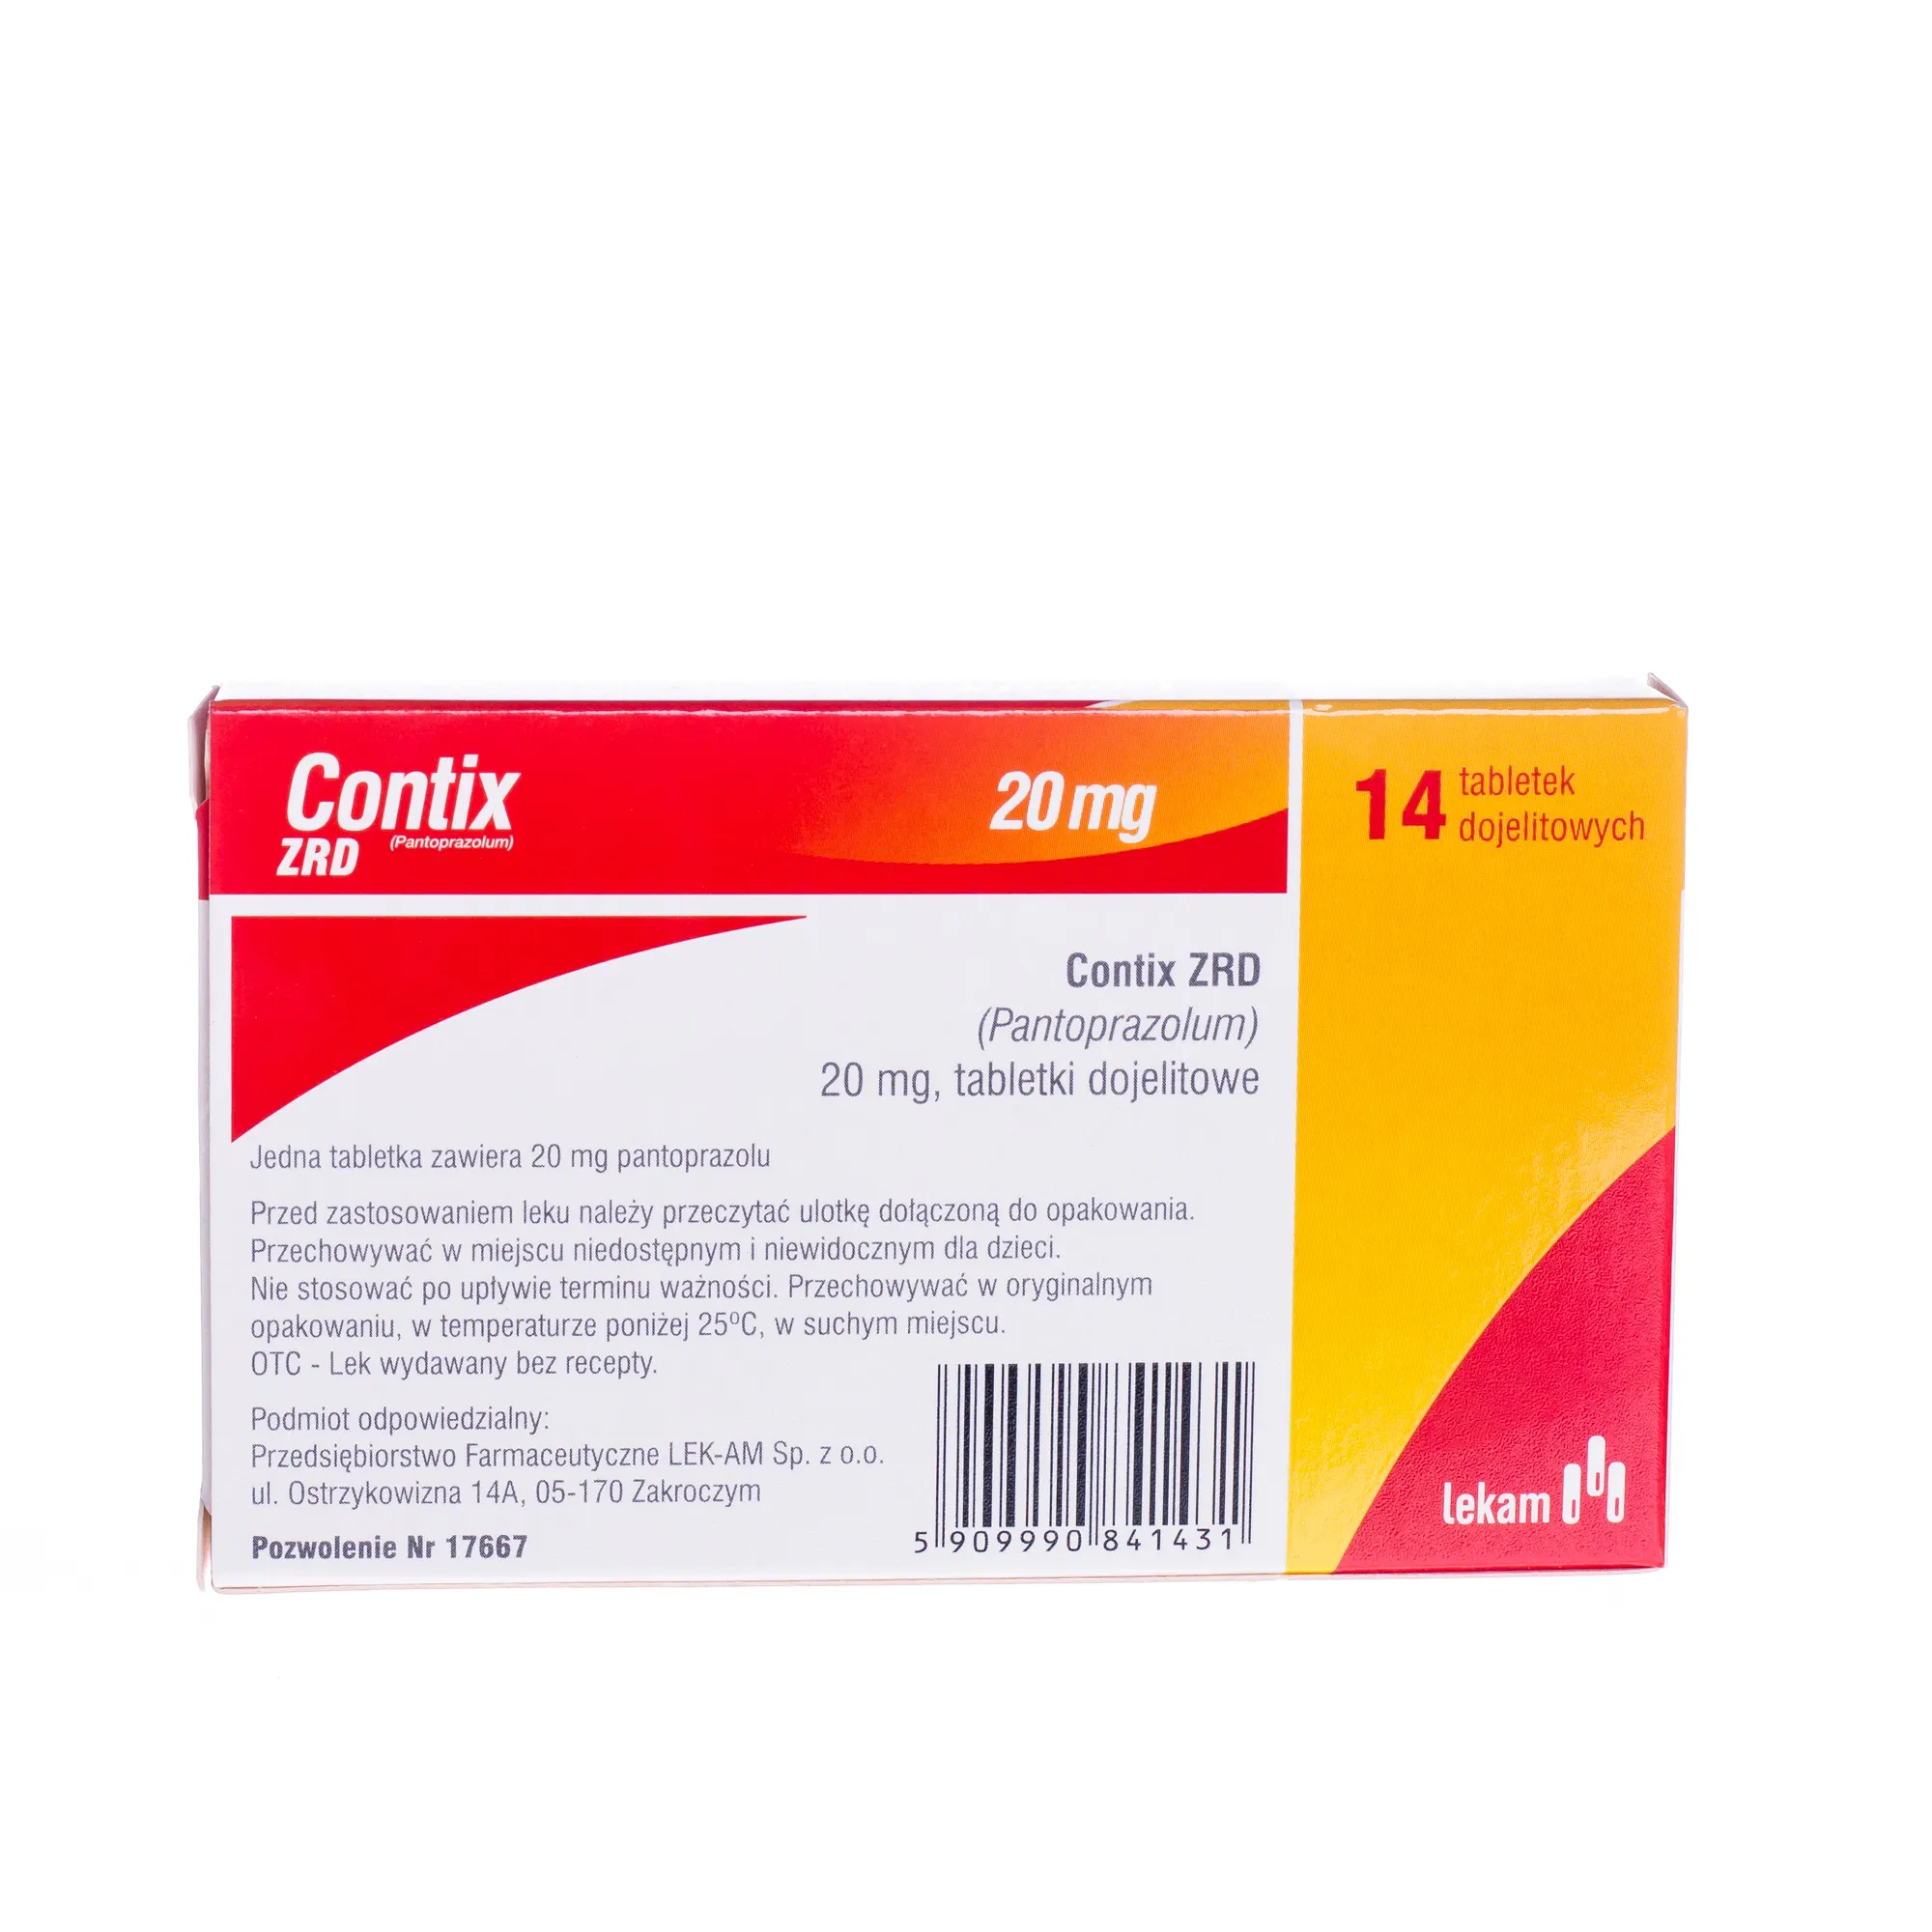 Contix ZRD ( Pantoprazolum ) 20 mg, 14 tabletek dojelitowych 